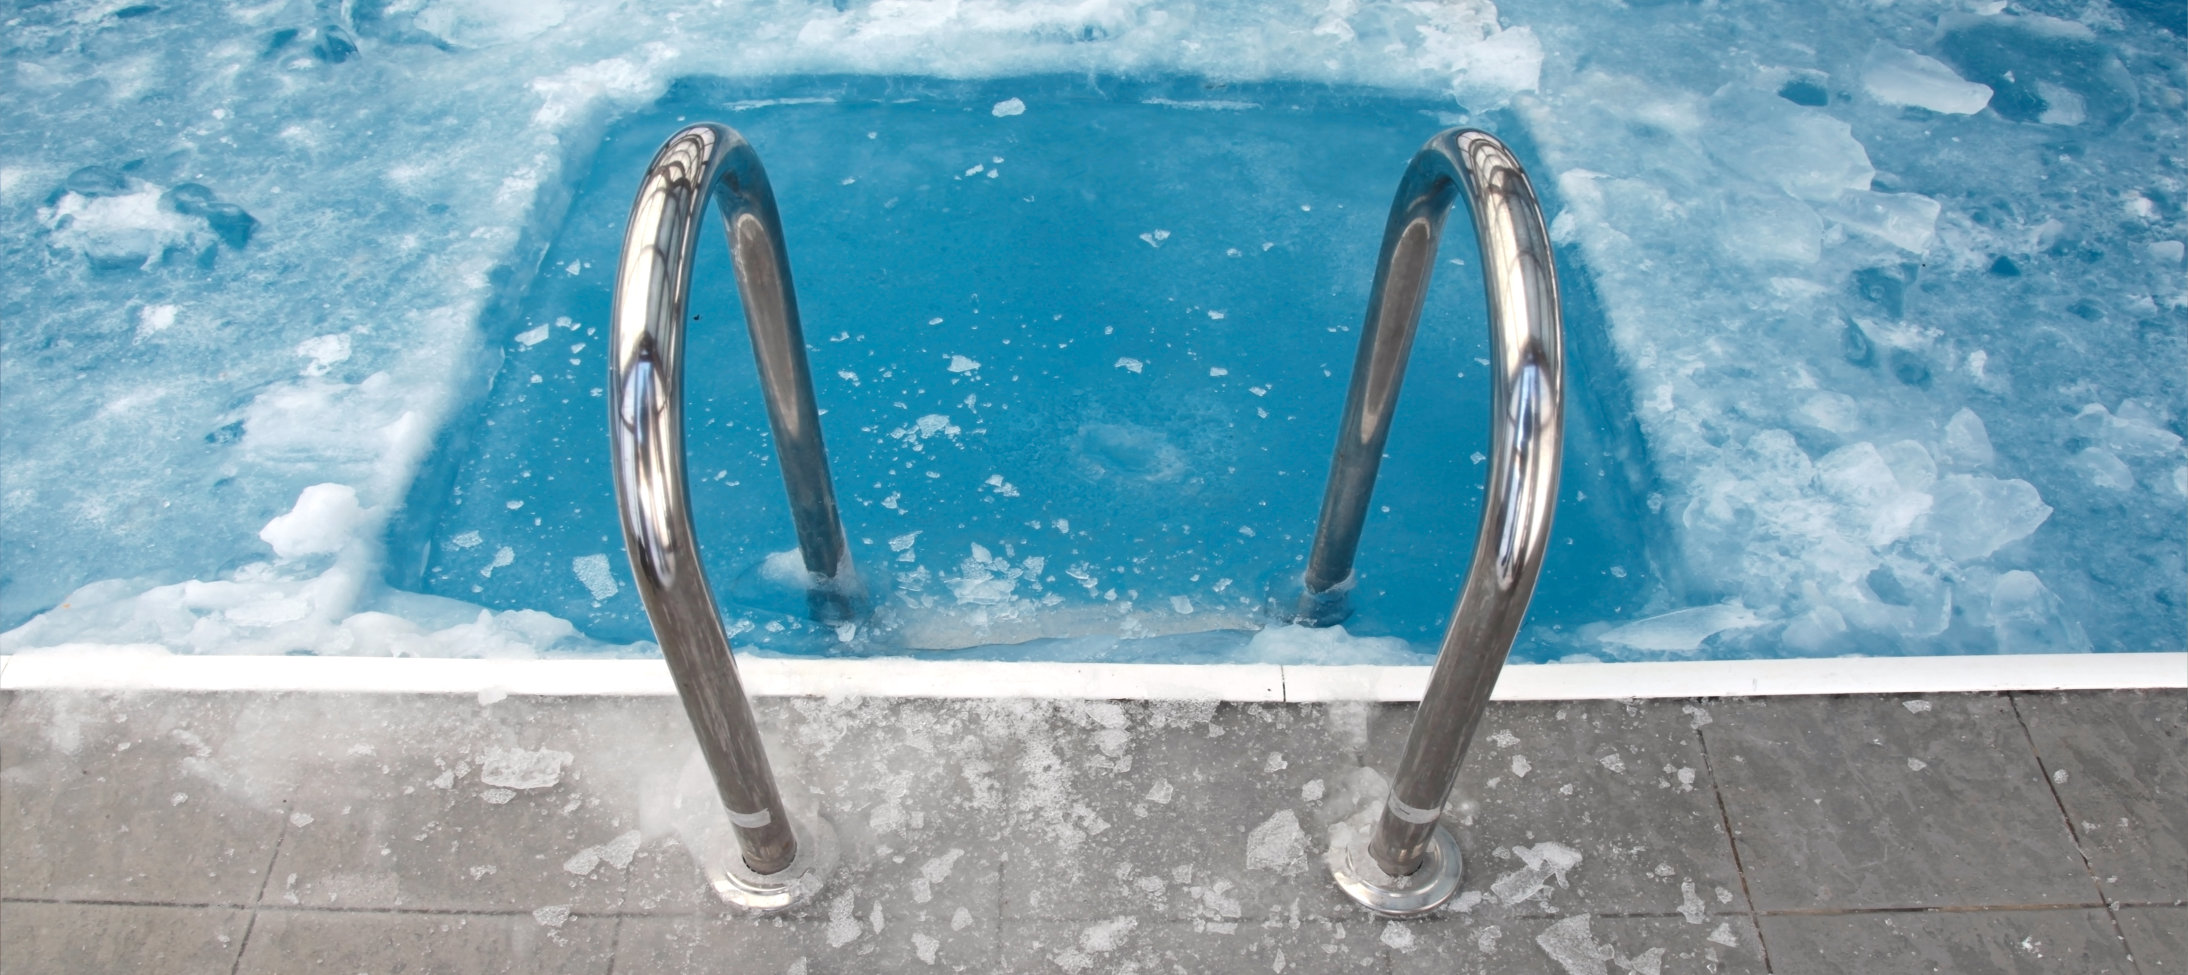 4 consejos para mantener las ventas de la tienda de piscinas en invierno